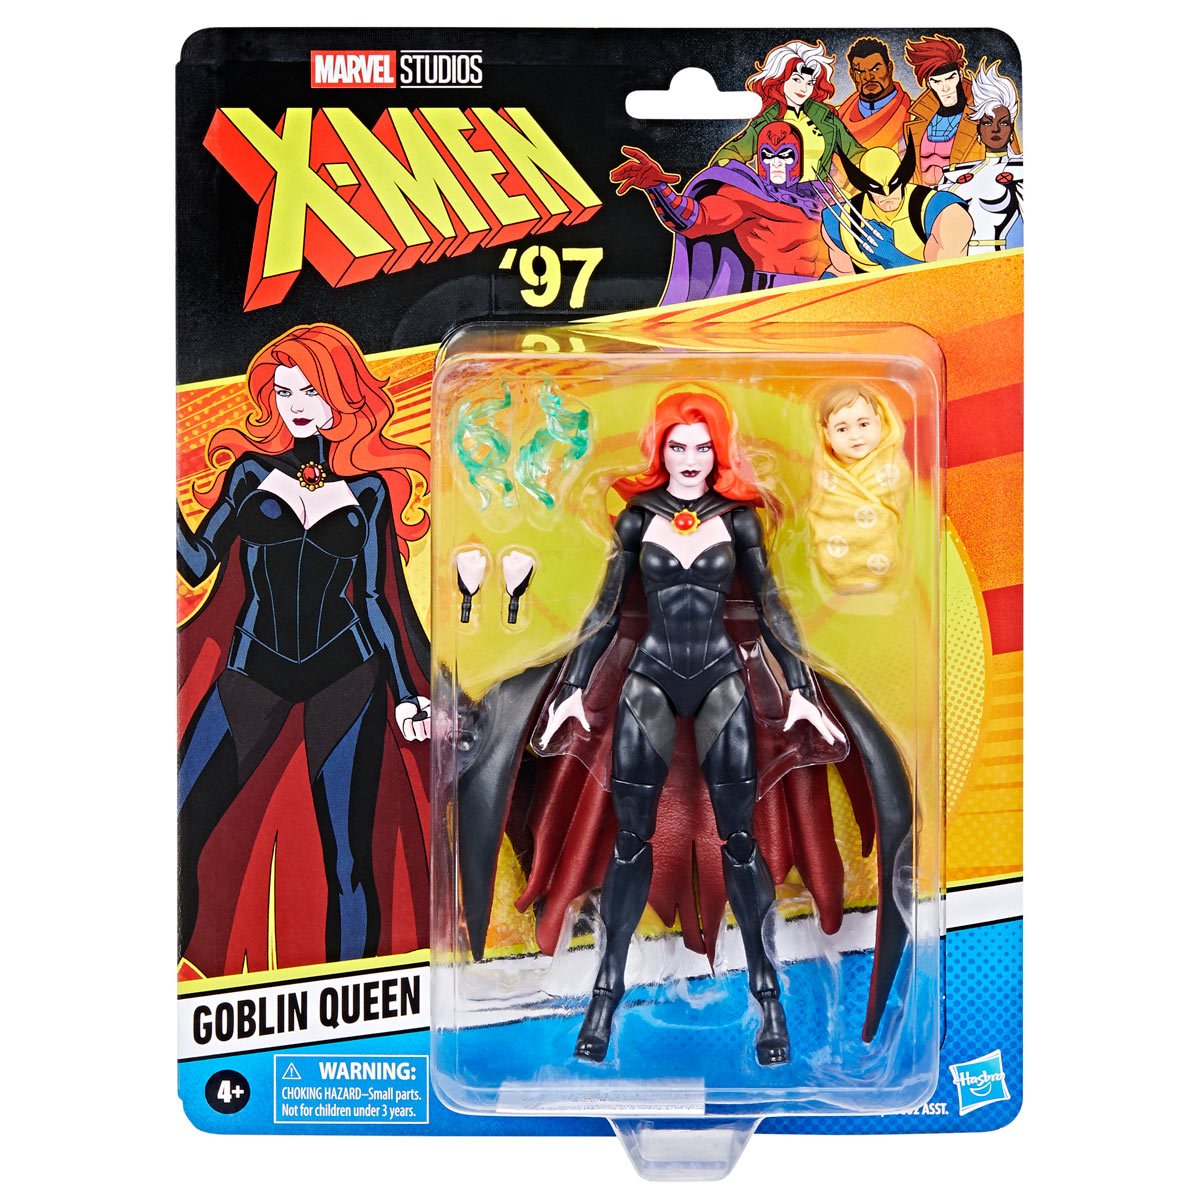 Marvel Legends X-Men 97 Goblin Queen 6-inch Action Figure